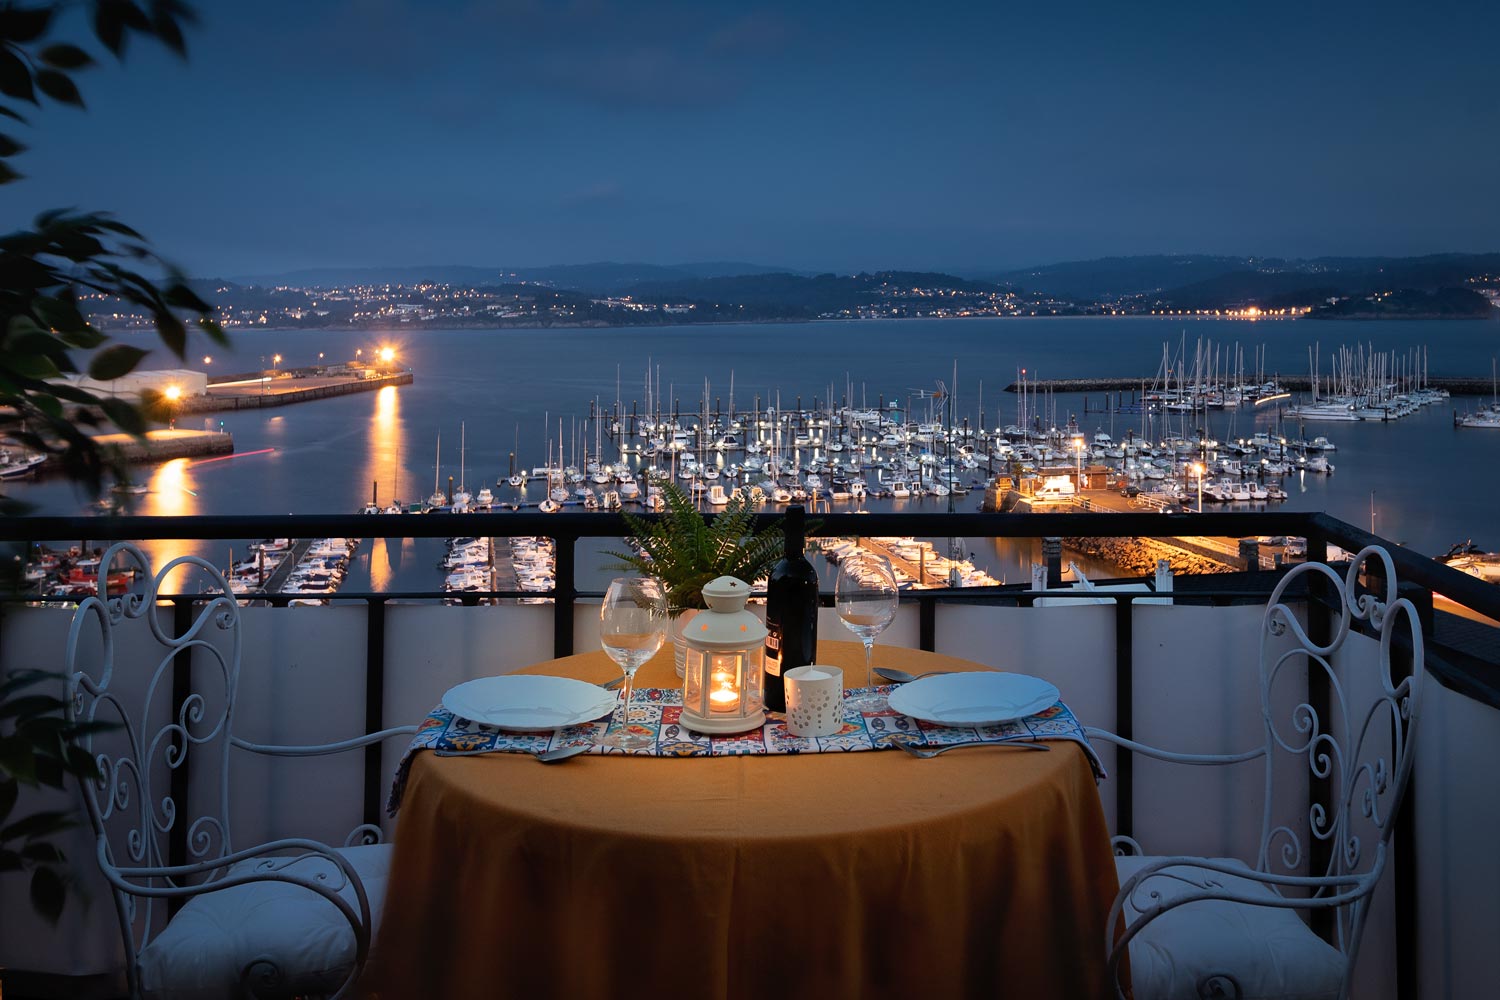 Peparación de mesa para cena en fotografía nocturna_ terraza superior de unifamiliar Sada y sus contornos_ vistas al puerto deportivo